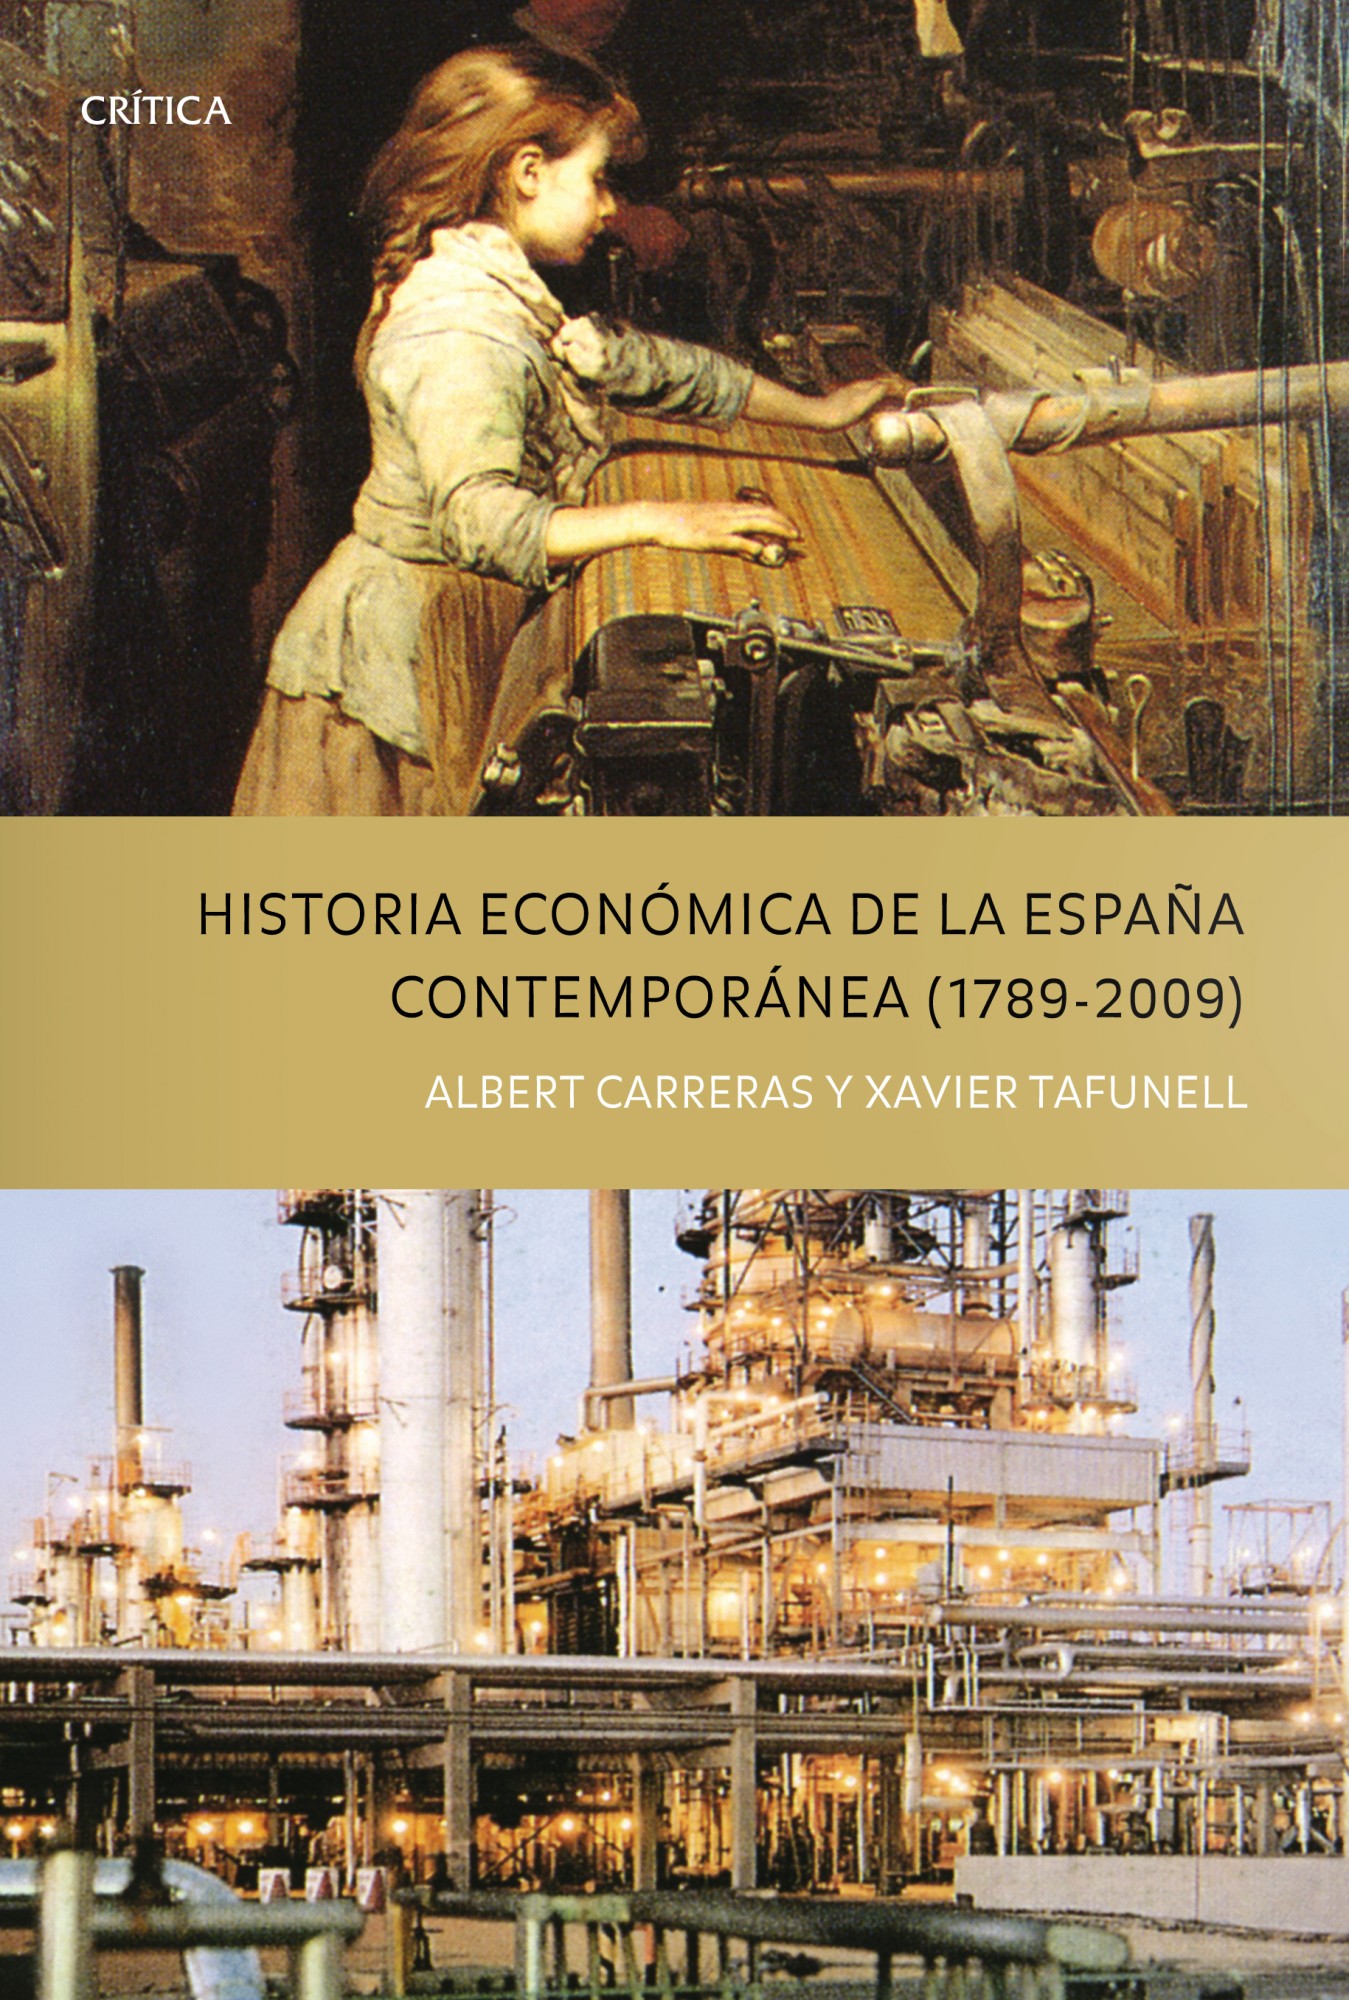 Historia económica de la España Contempóranea (1789 - 2009)